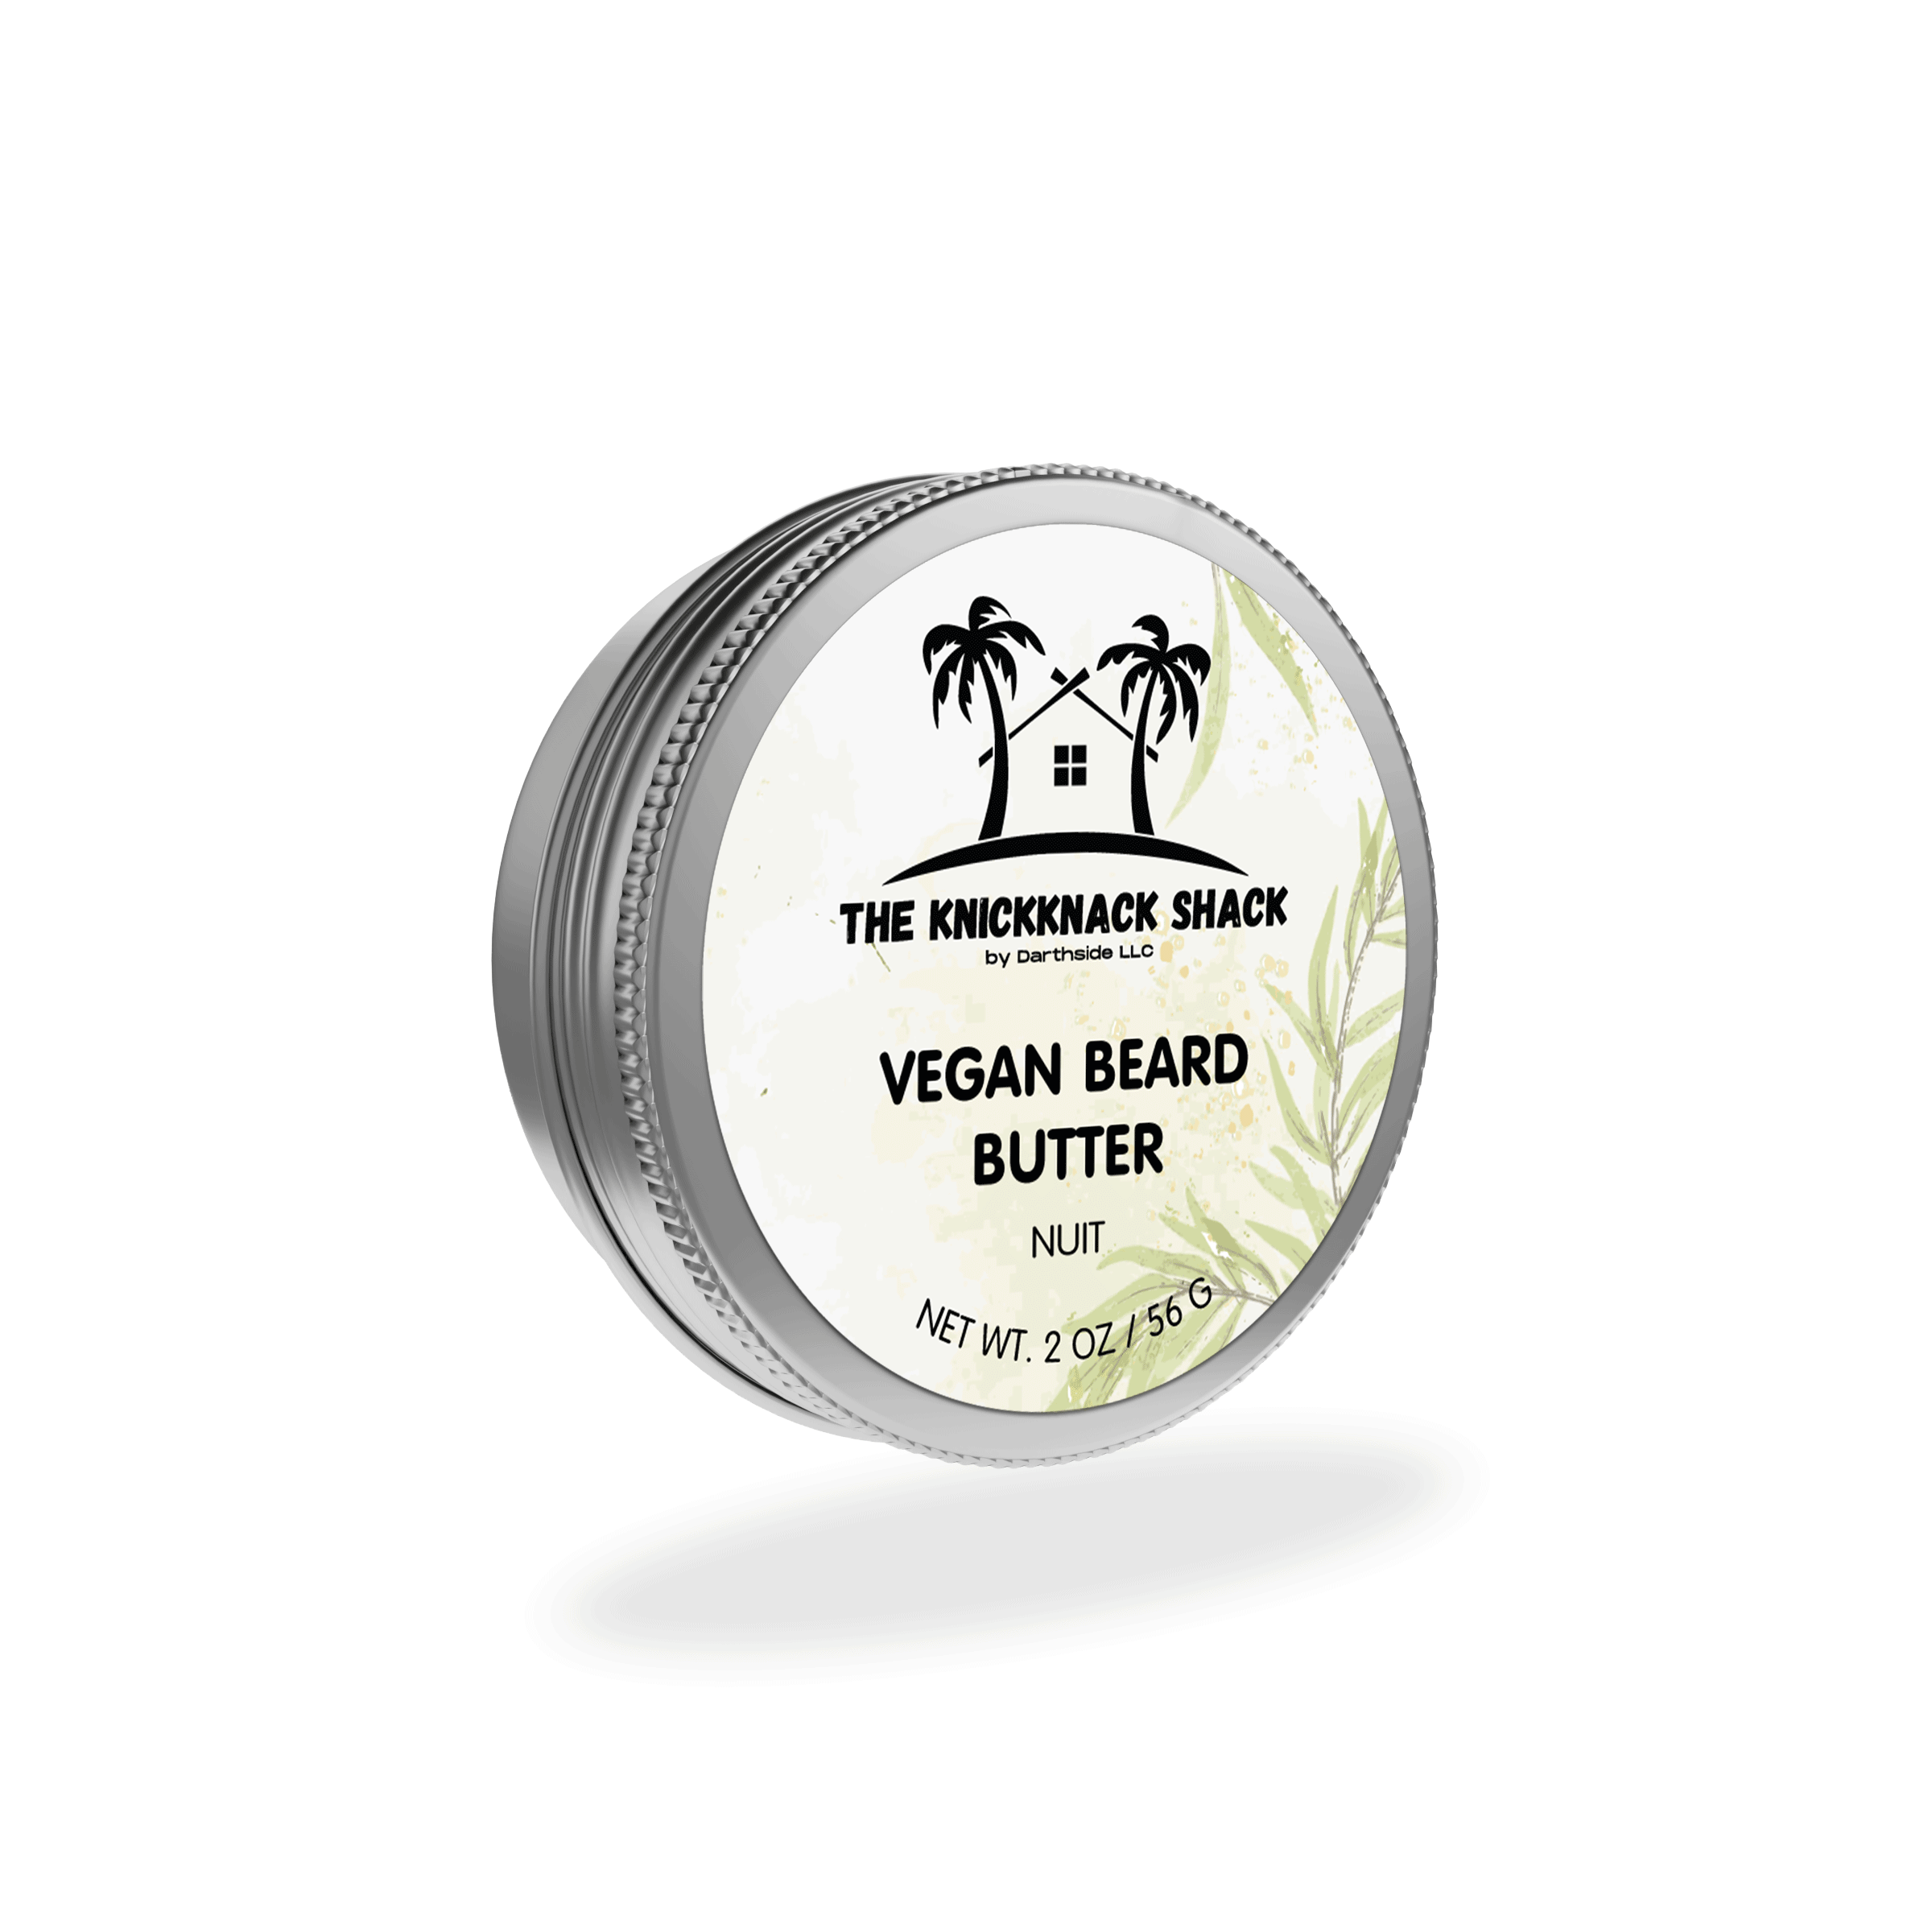 Nuit Vegan Beard Butter